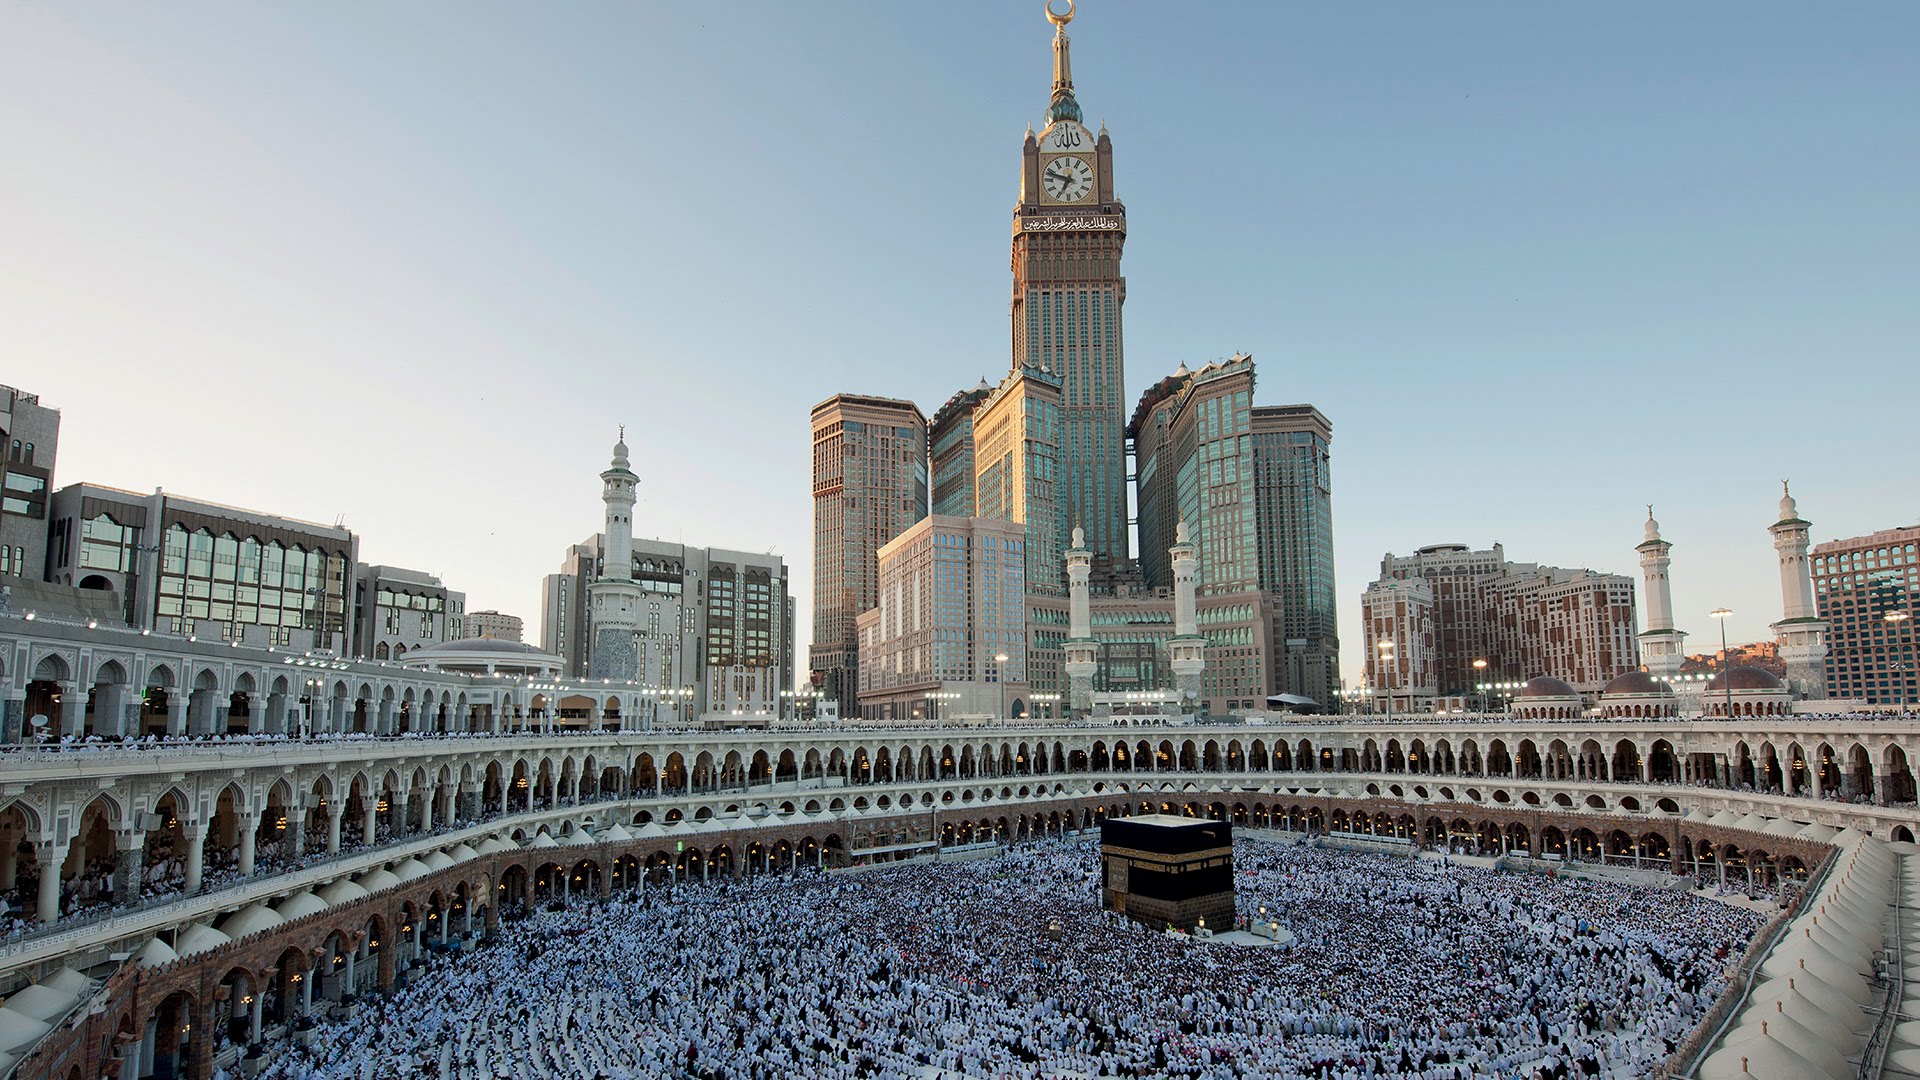 Saudi Longgarkan Jam Malam, Kecuali Makkah